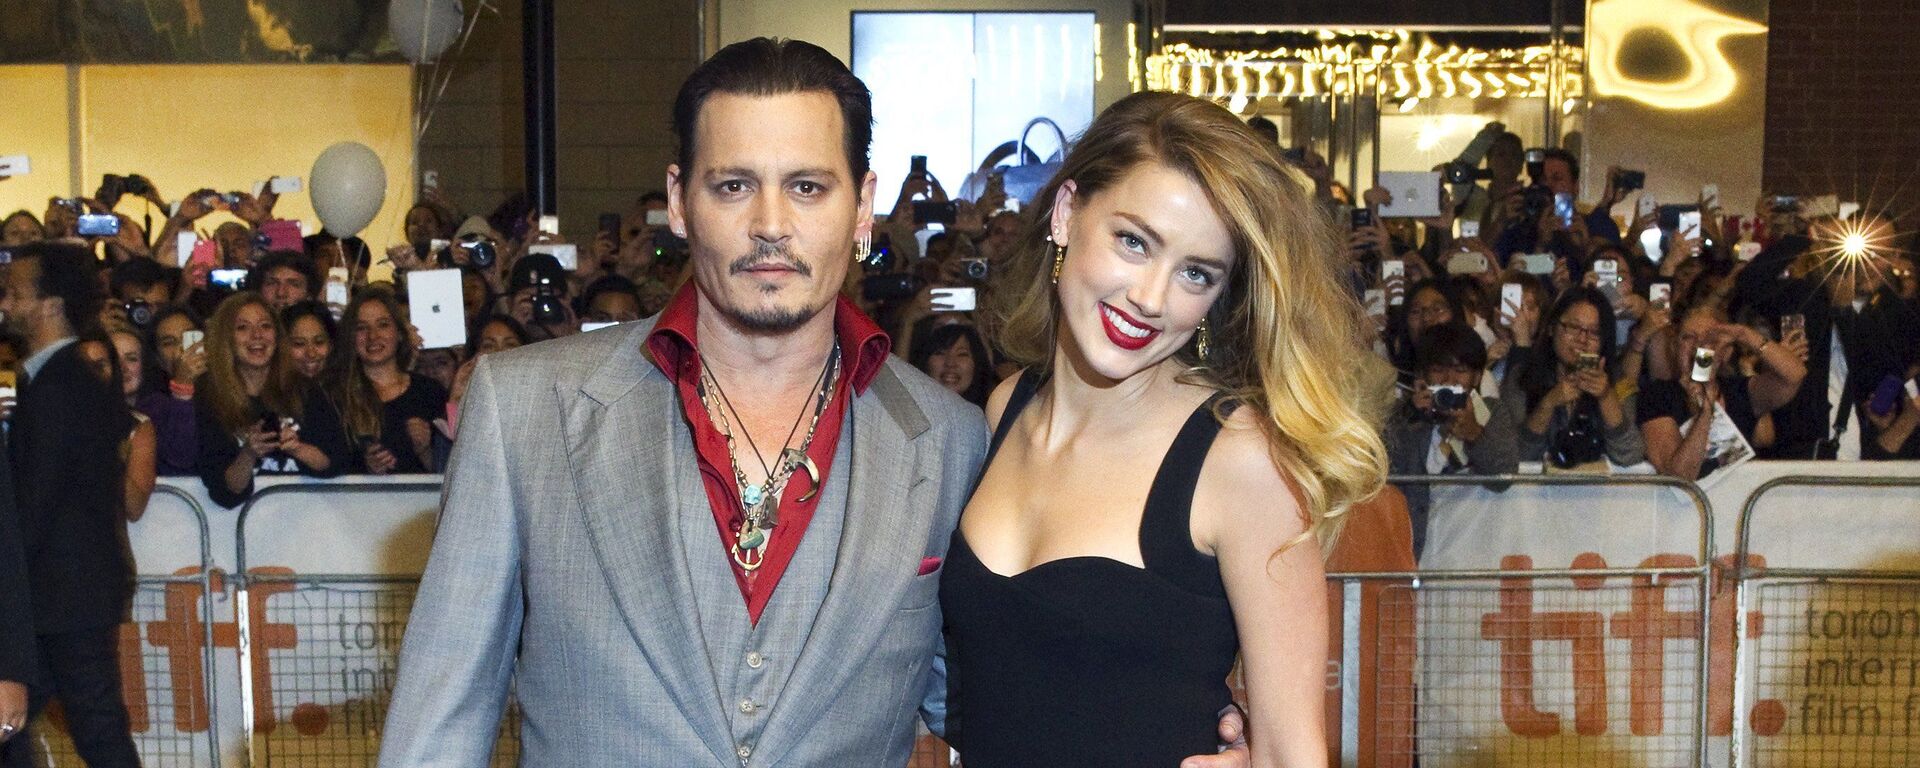 El actor Johnny Depp junto a su exesposa, la actriz Amber Heard - Sputnik Mundo, 1920, 09.04.2020